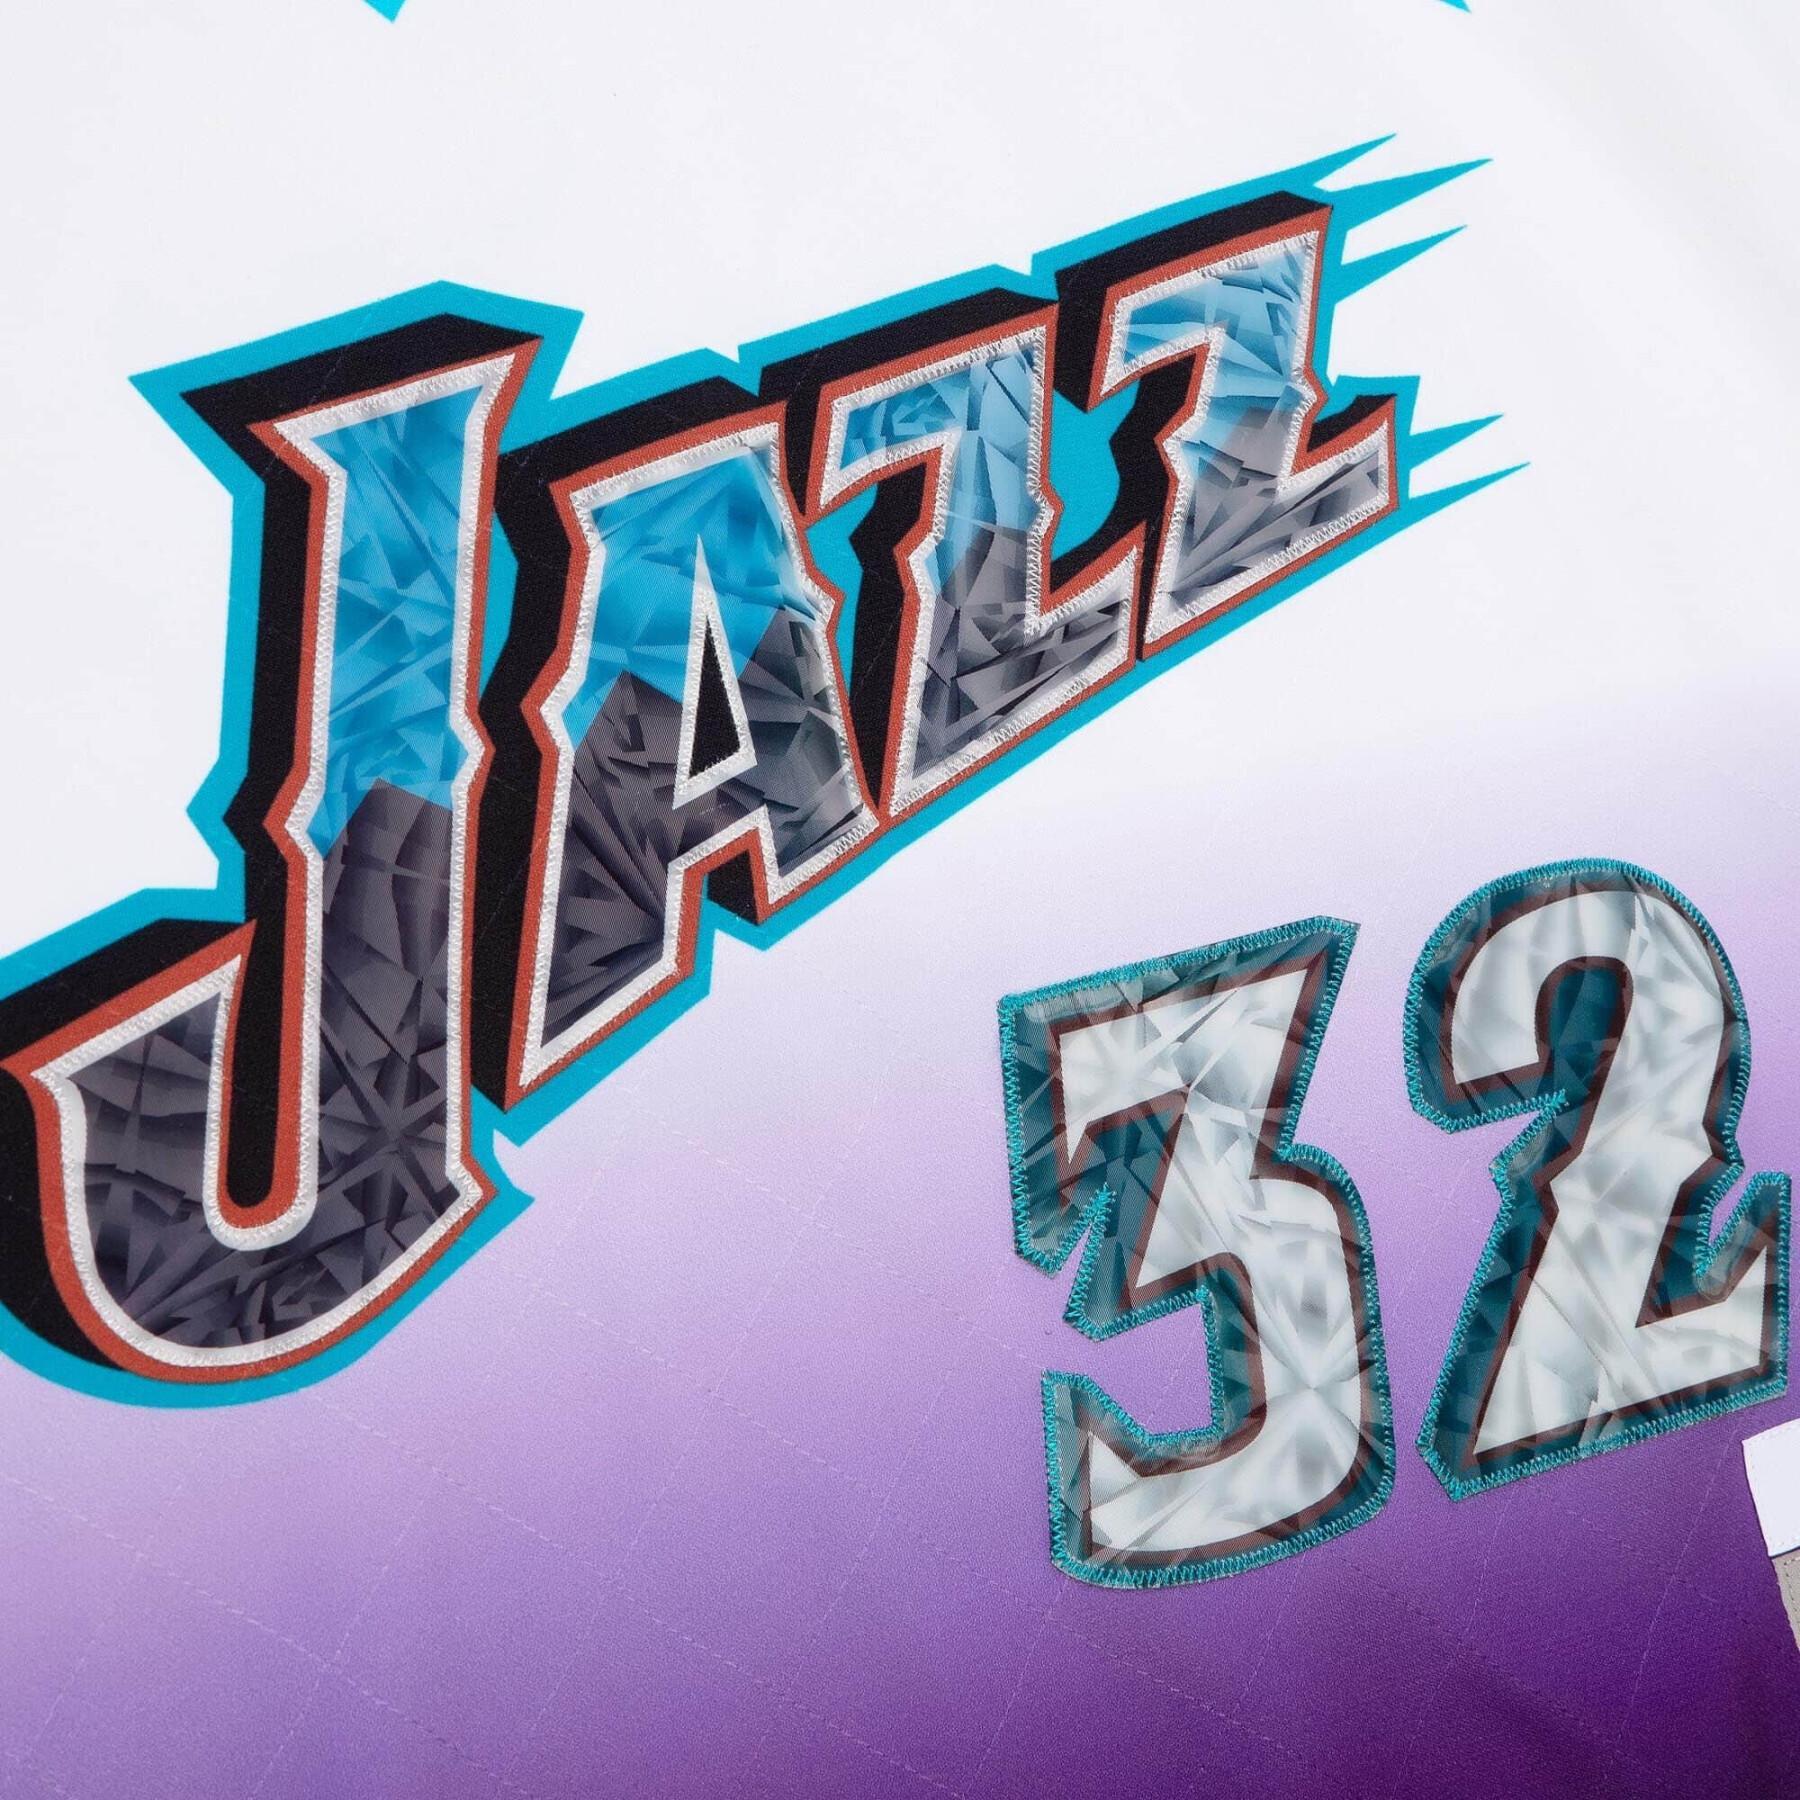 Camiseta Utah Jazz NBA 75Th Anniversary Swingman 1996 Karl Malone